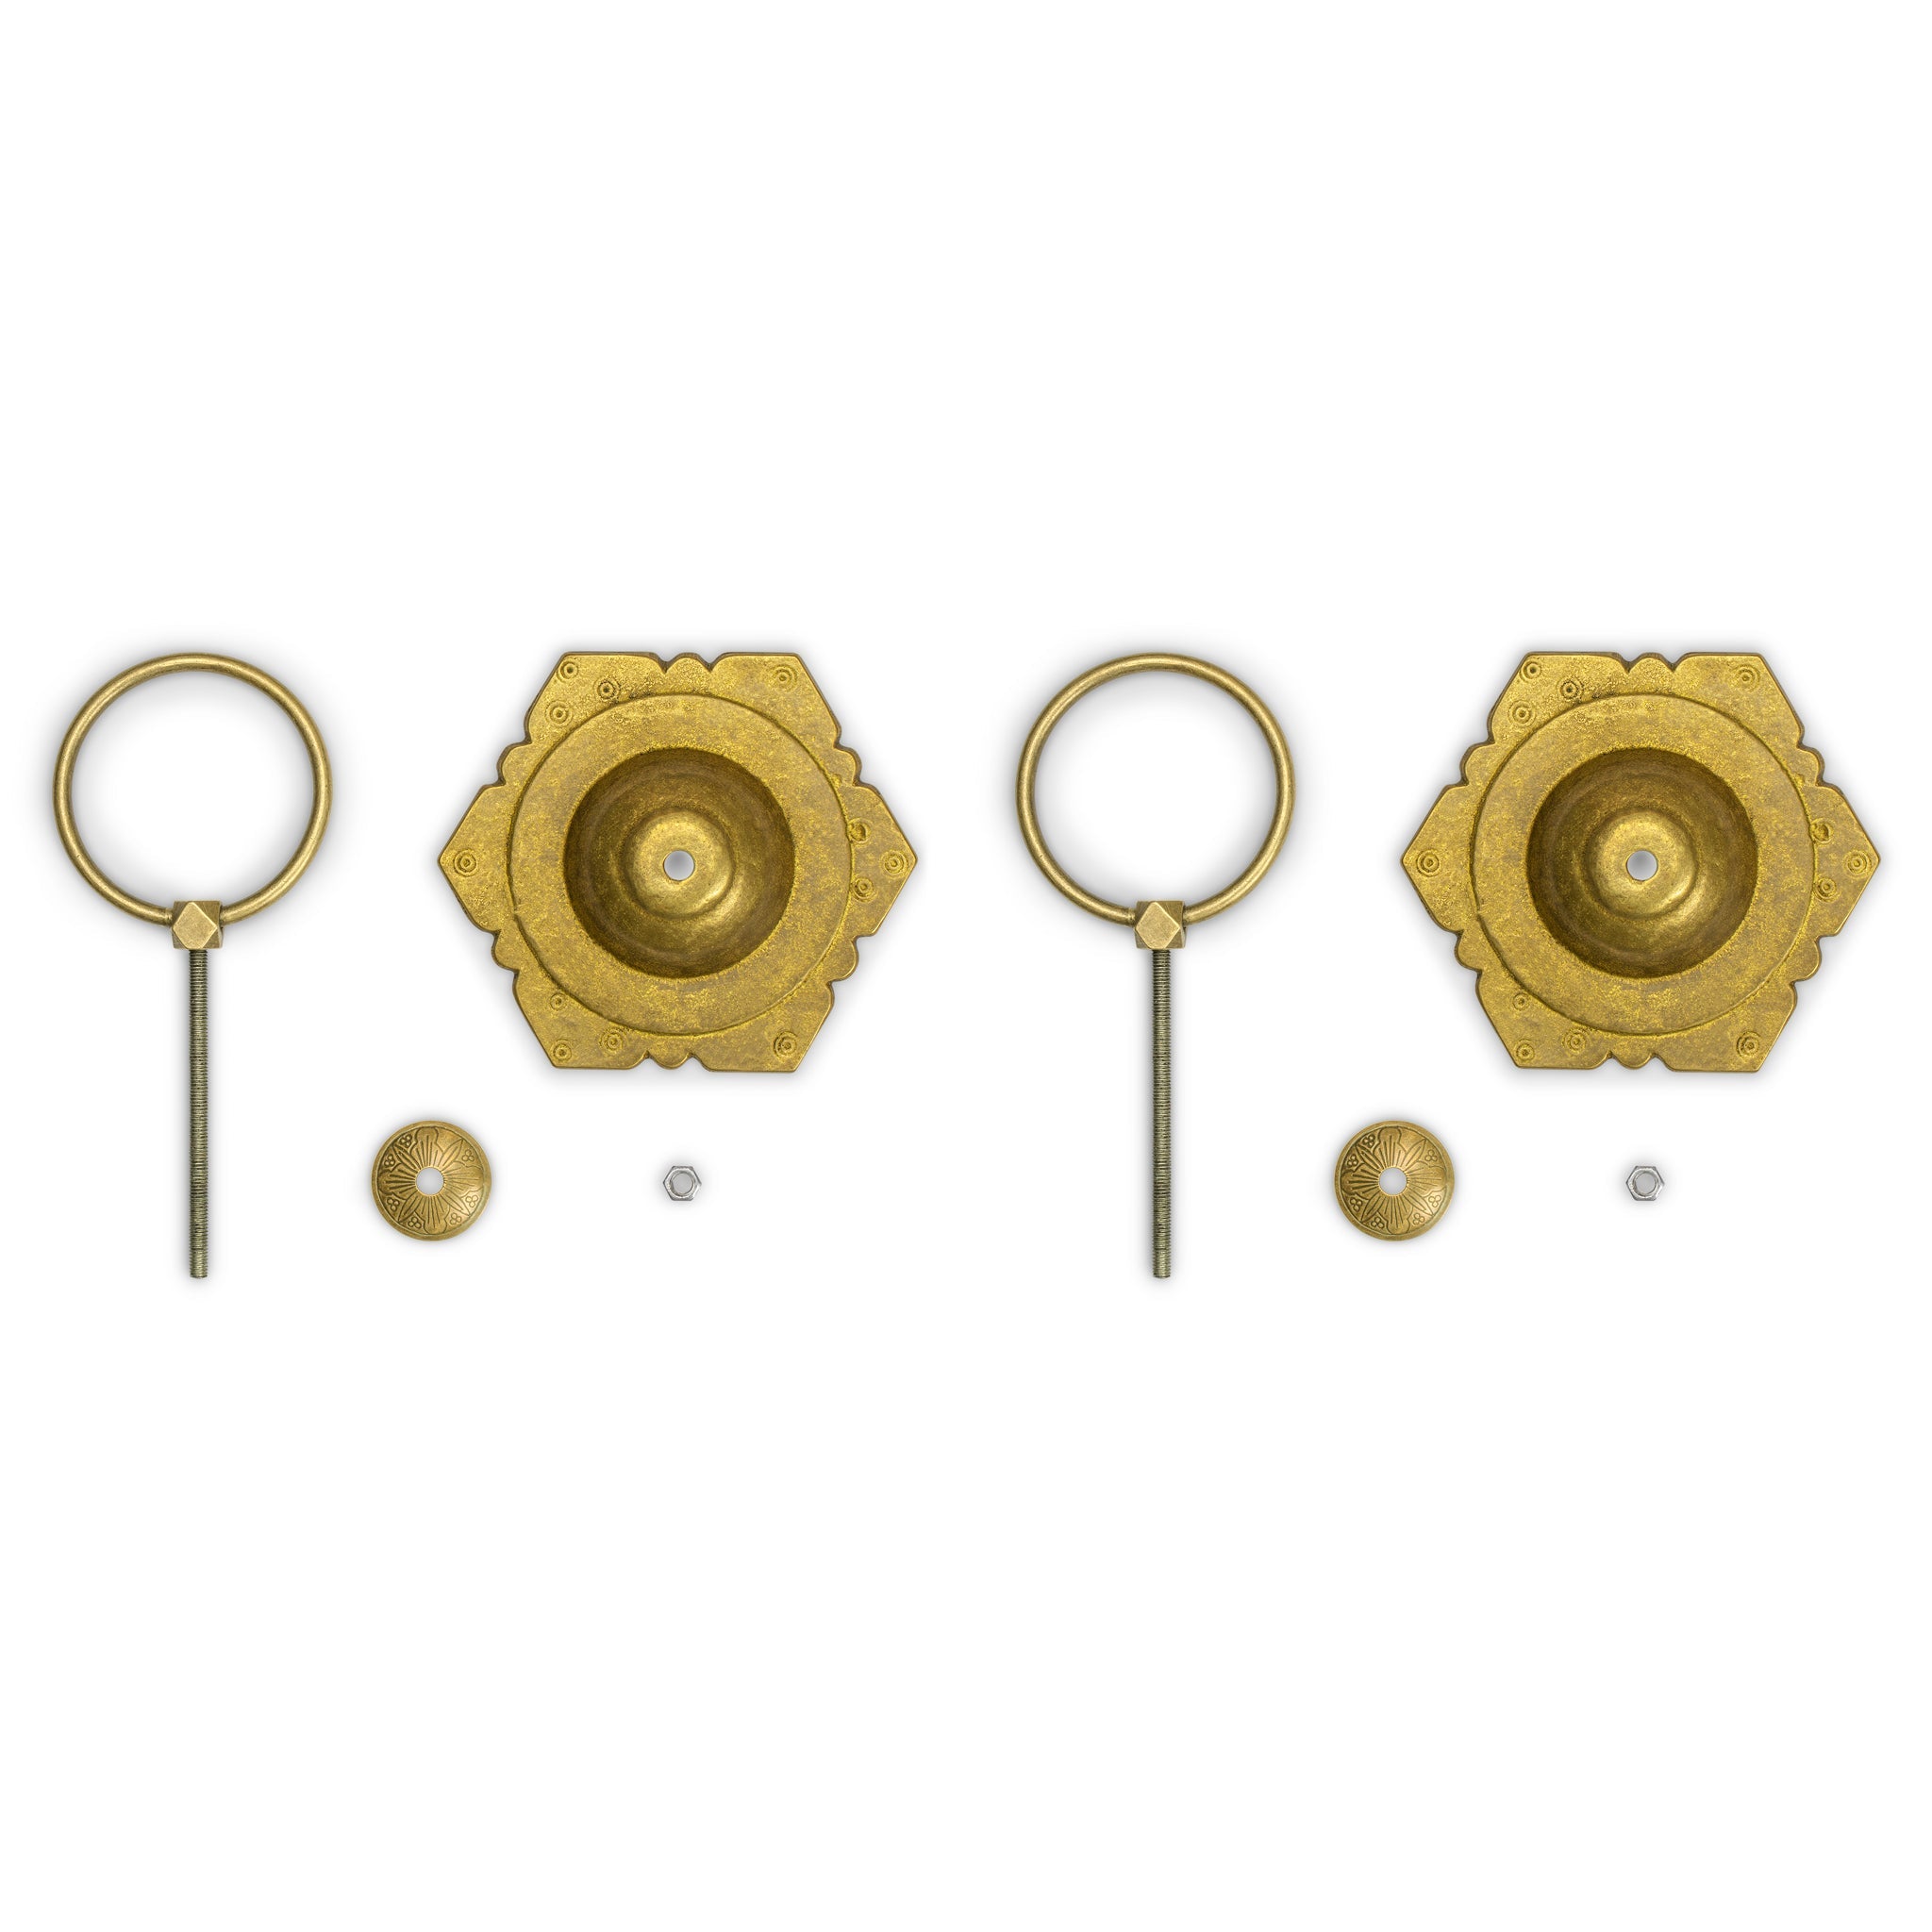 Hexagon Pulls 5.3" - Set of 2-Chinese Brass Hardware